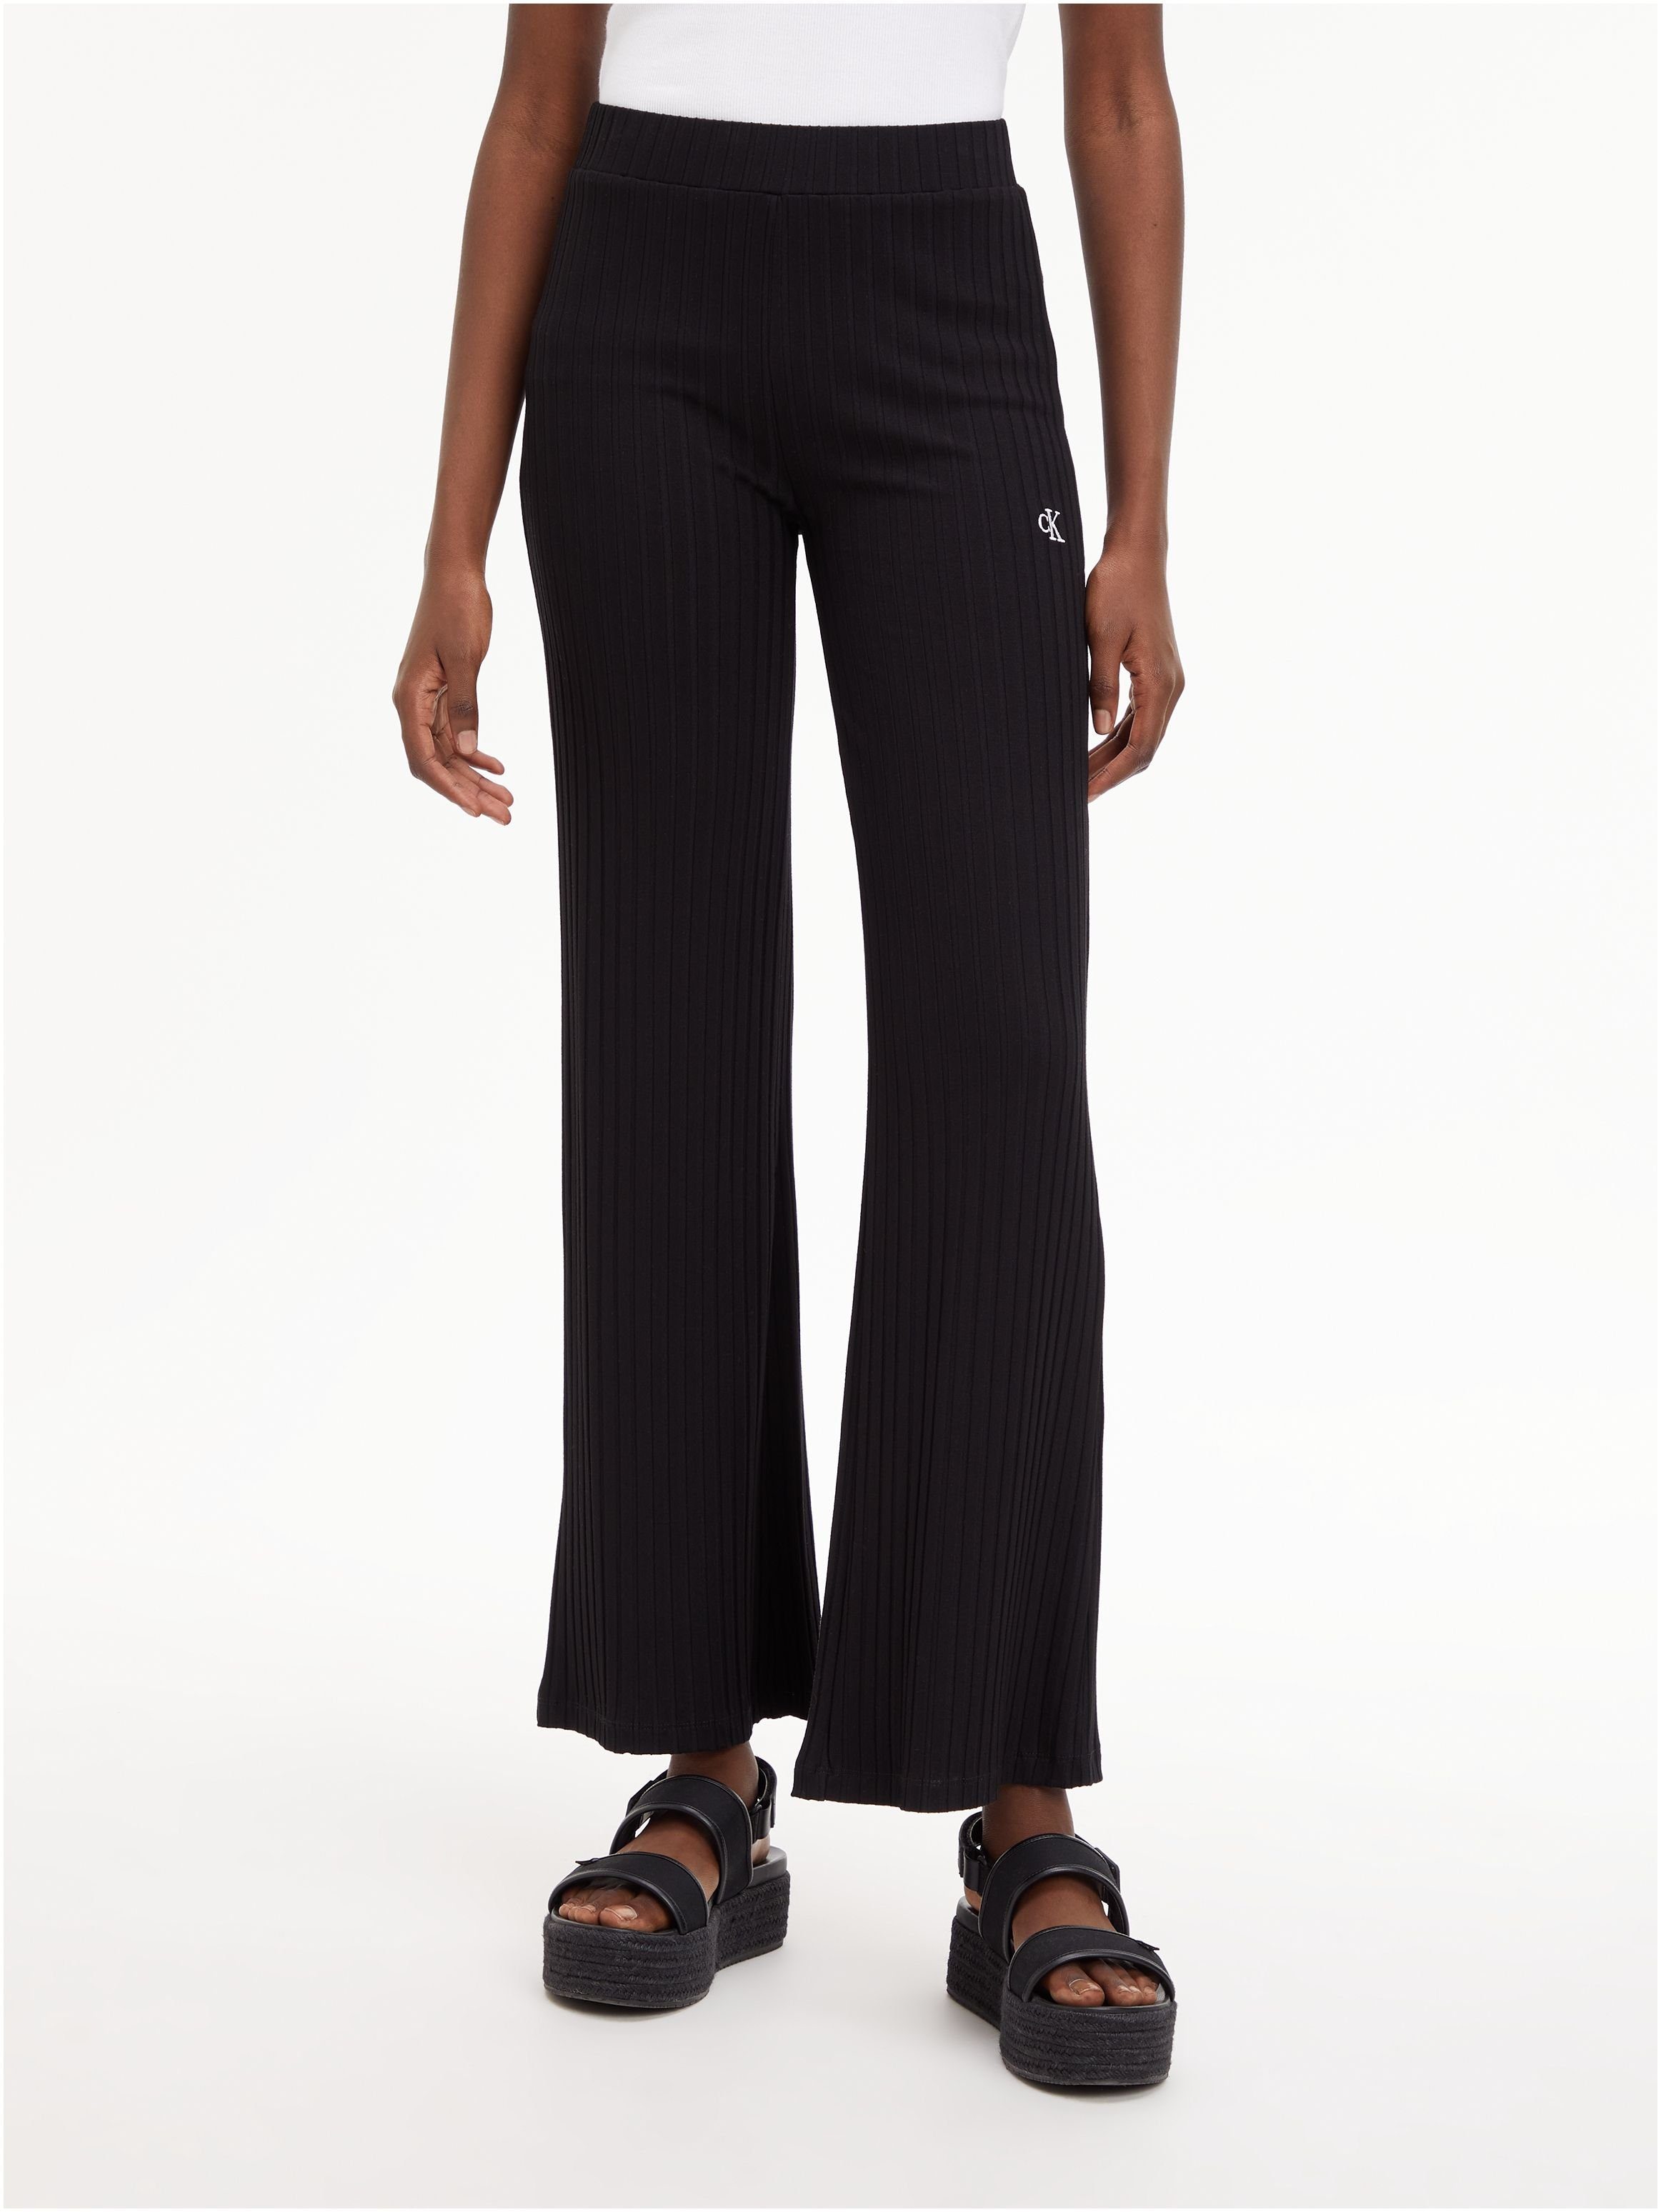 Calvin Klein Jeans Stretch-Hose schwarz | Stretchhosen